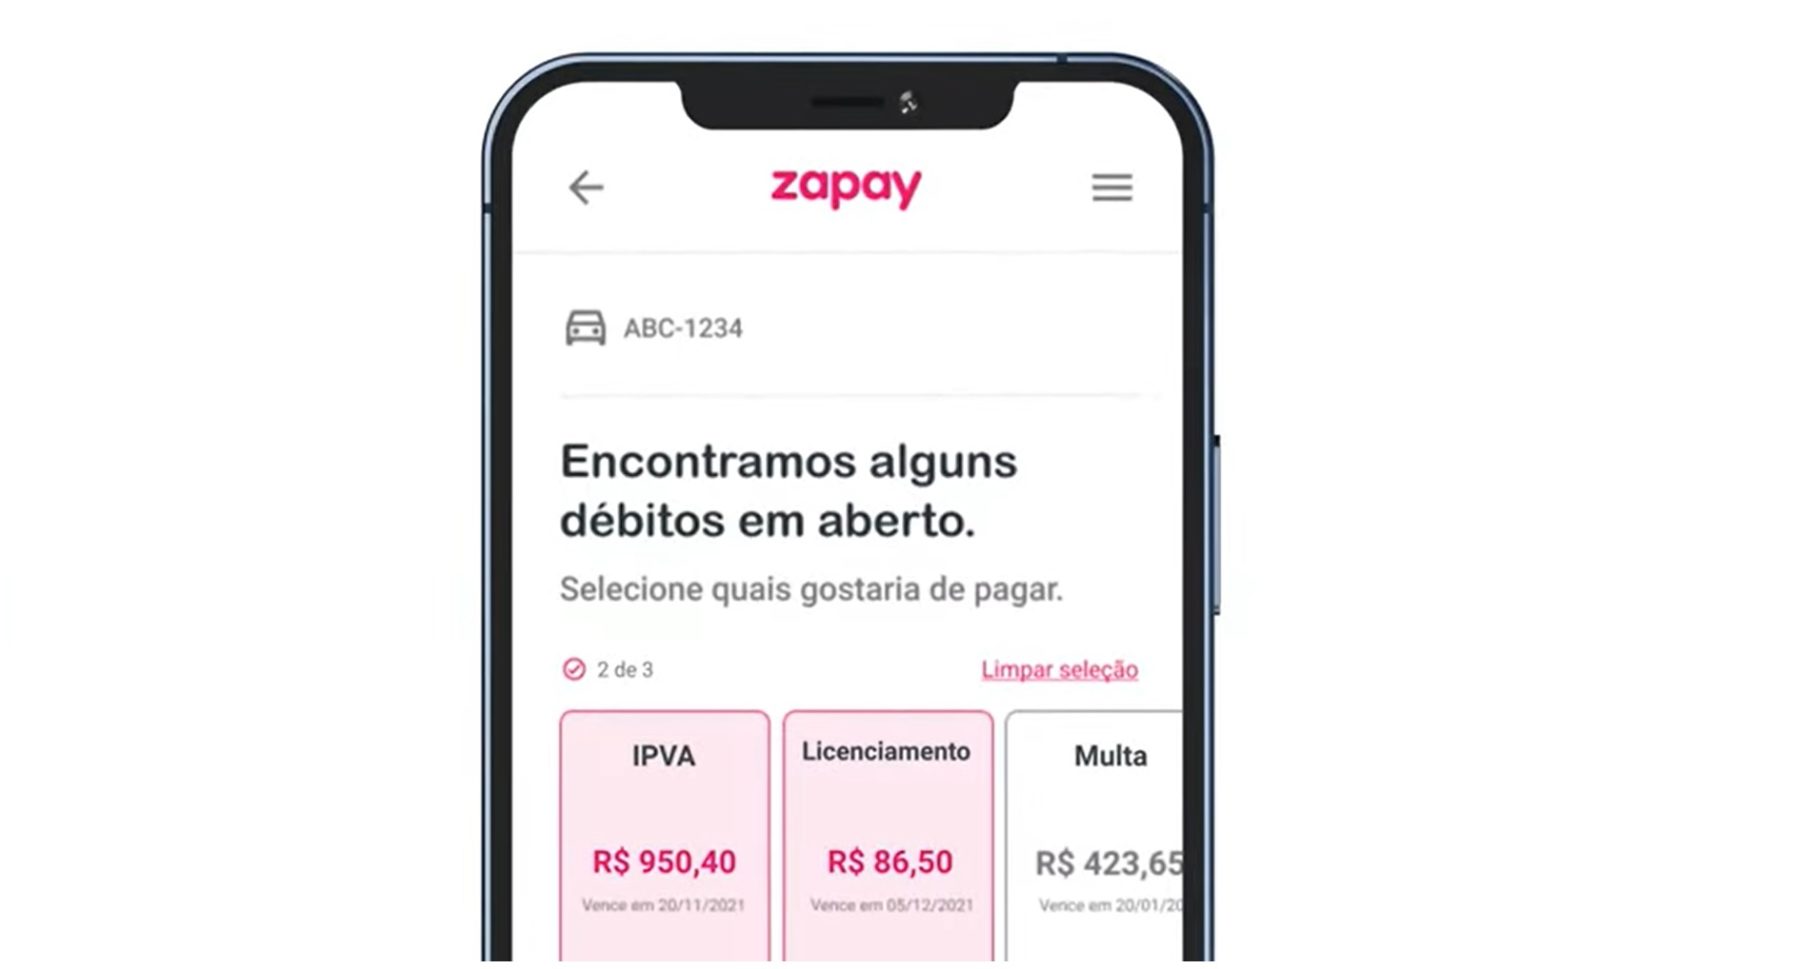 Interface do aplicativo Zapay